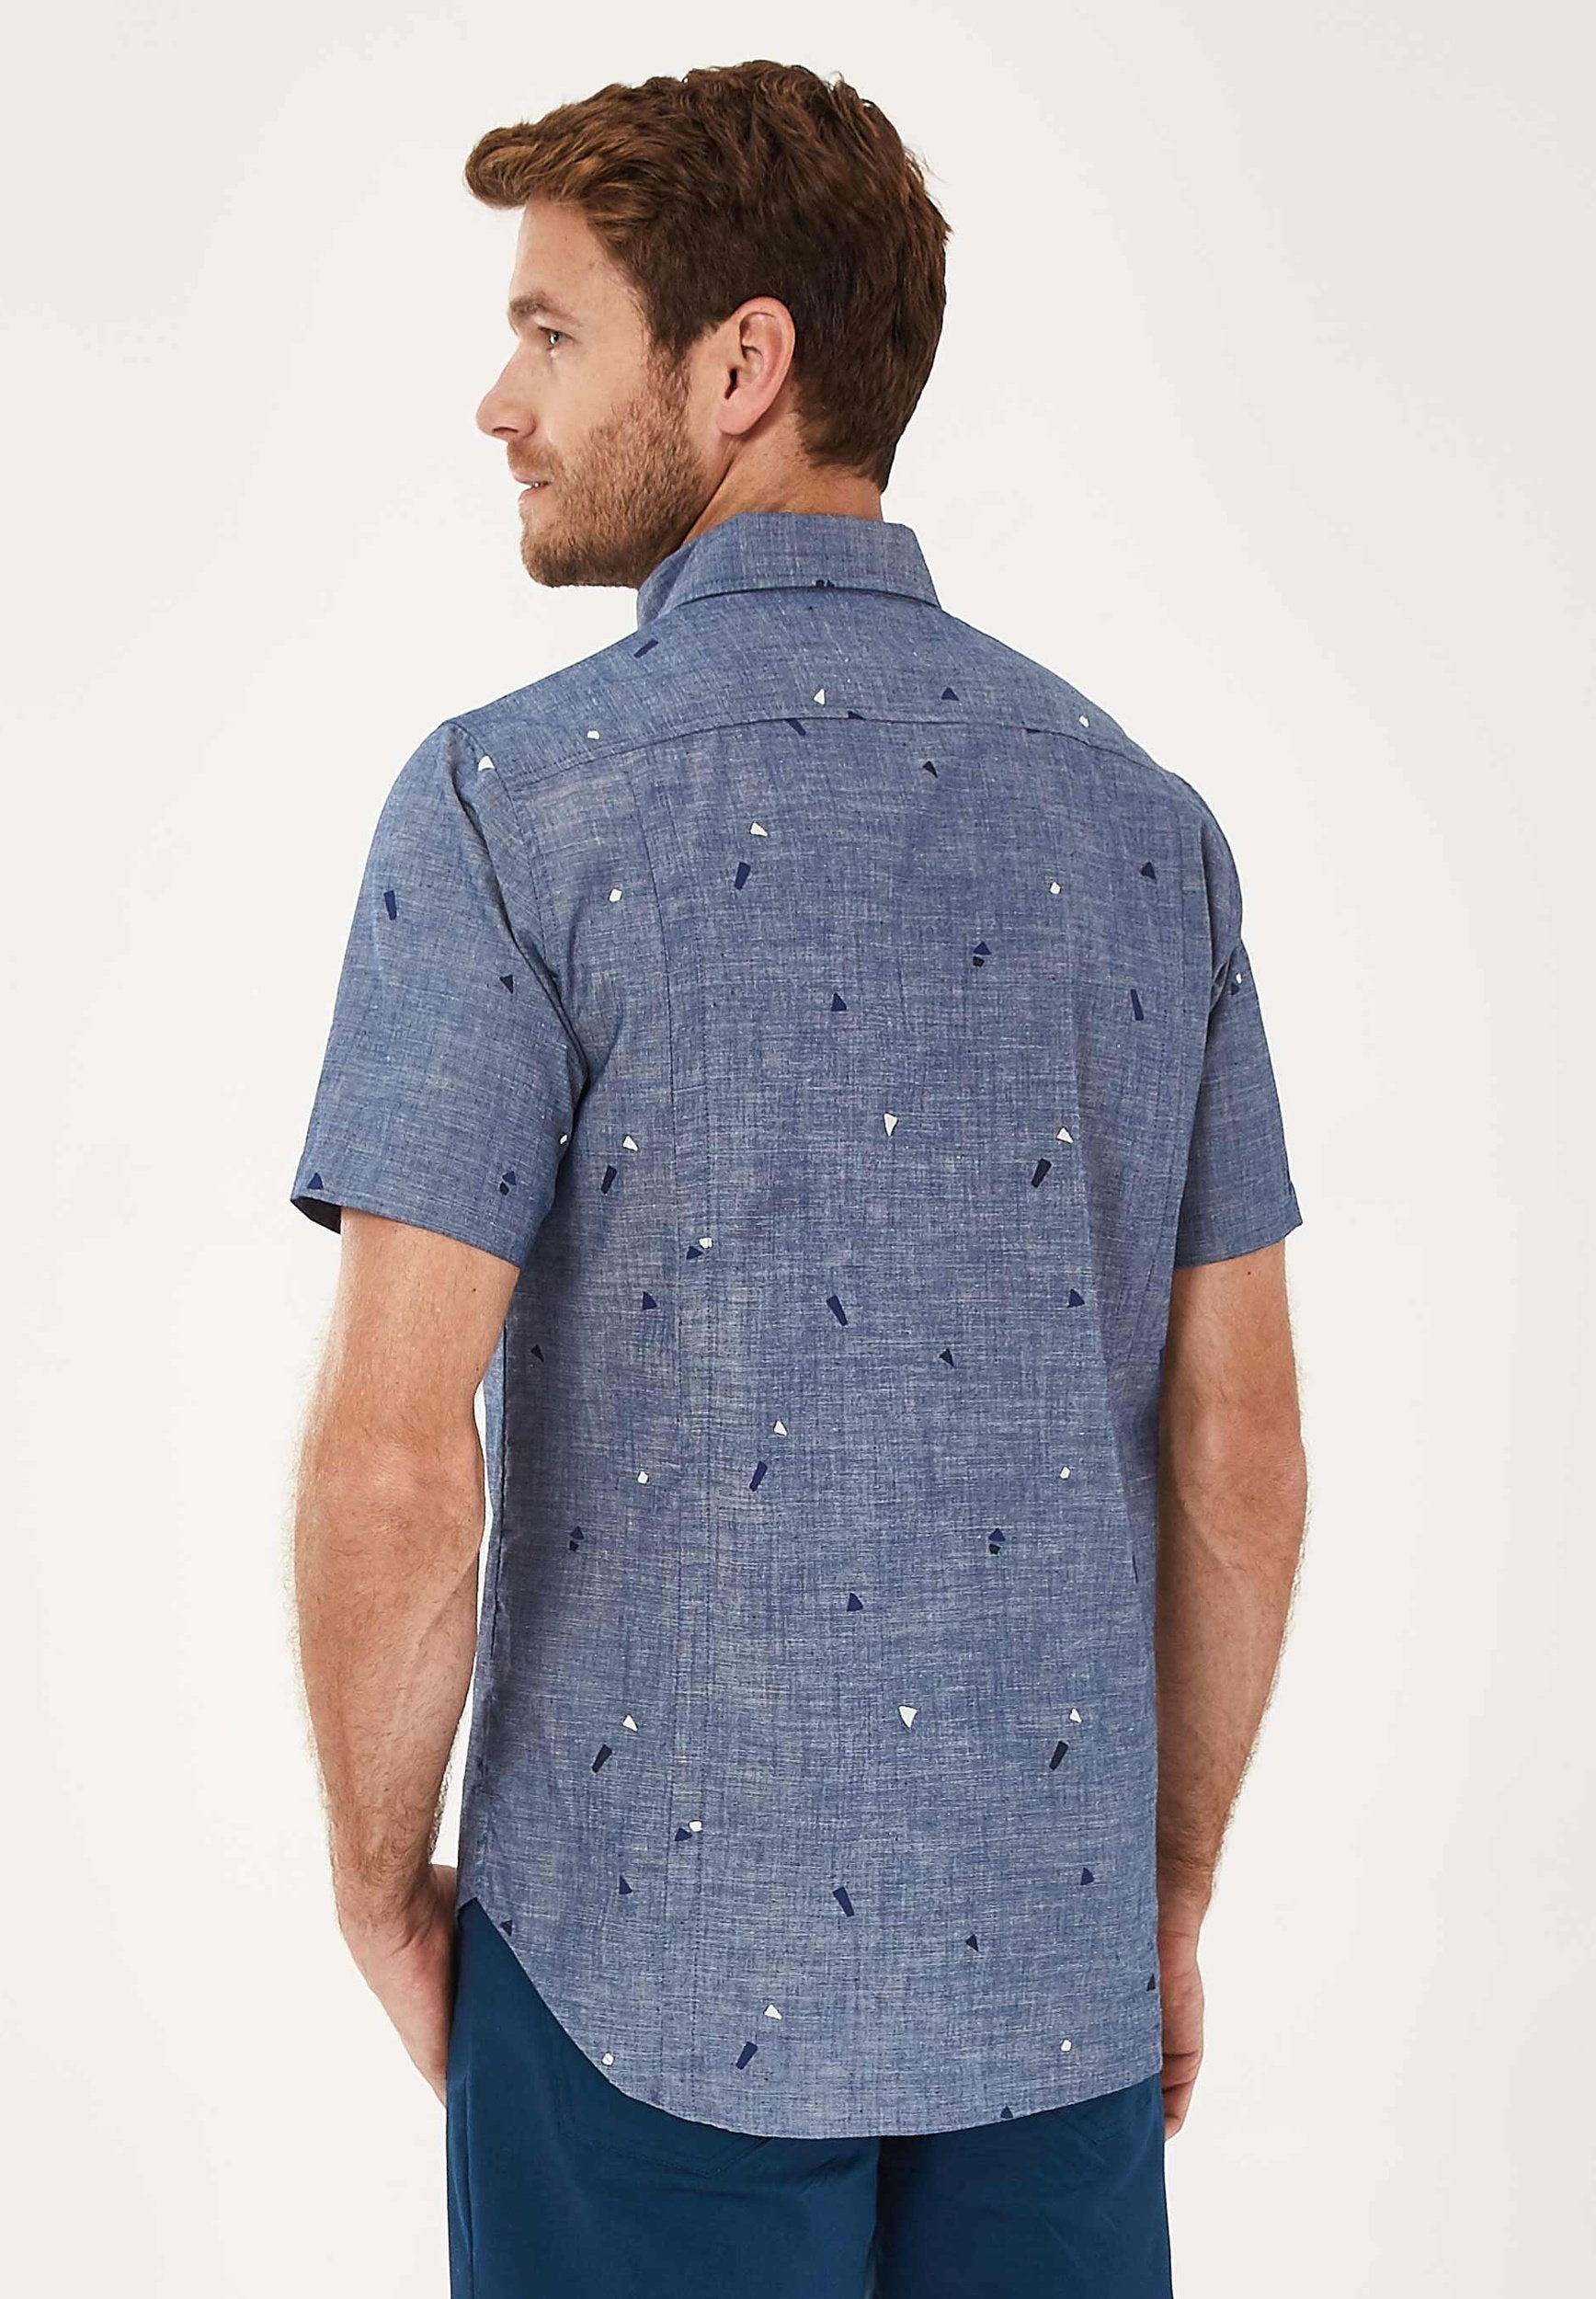 Kurzarm Hemd aus Bio-Baumwolle mit Allover-Print in Denim Optik